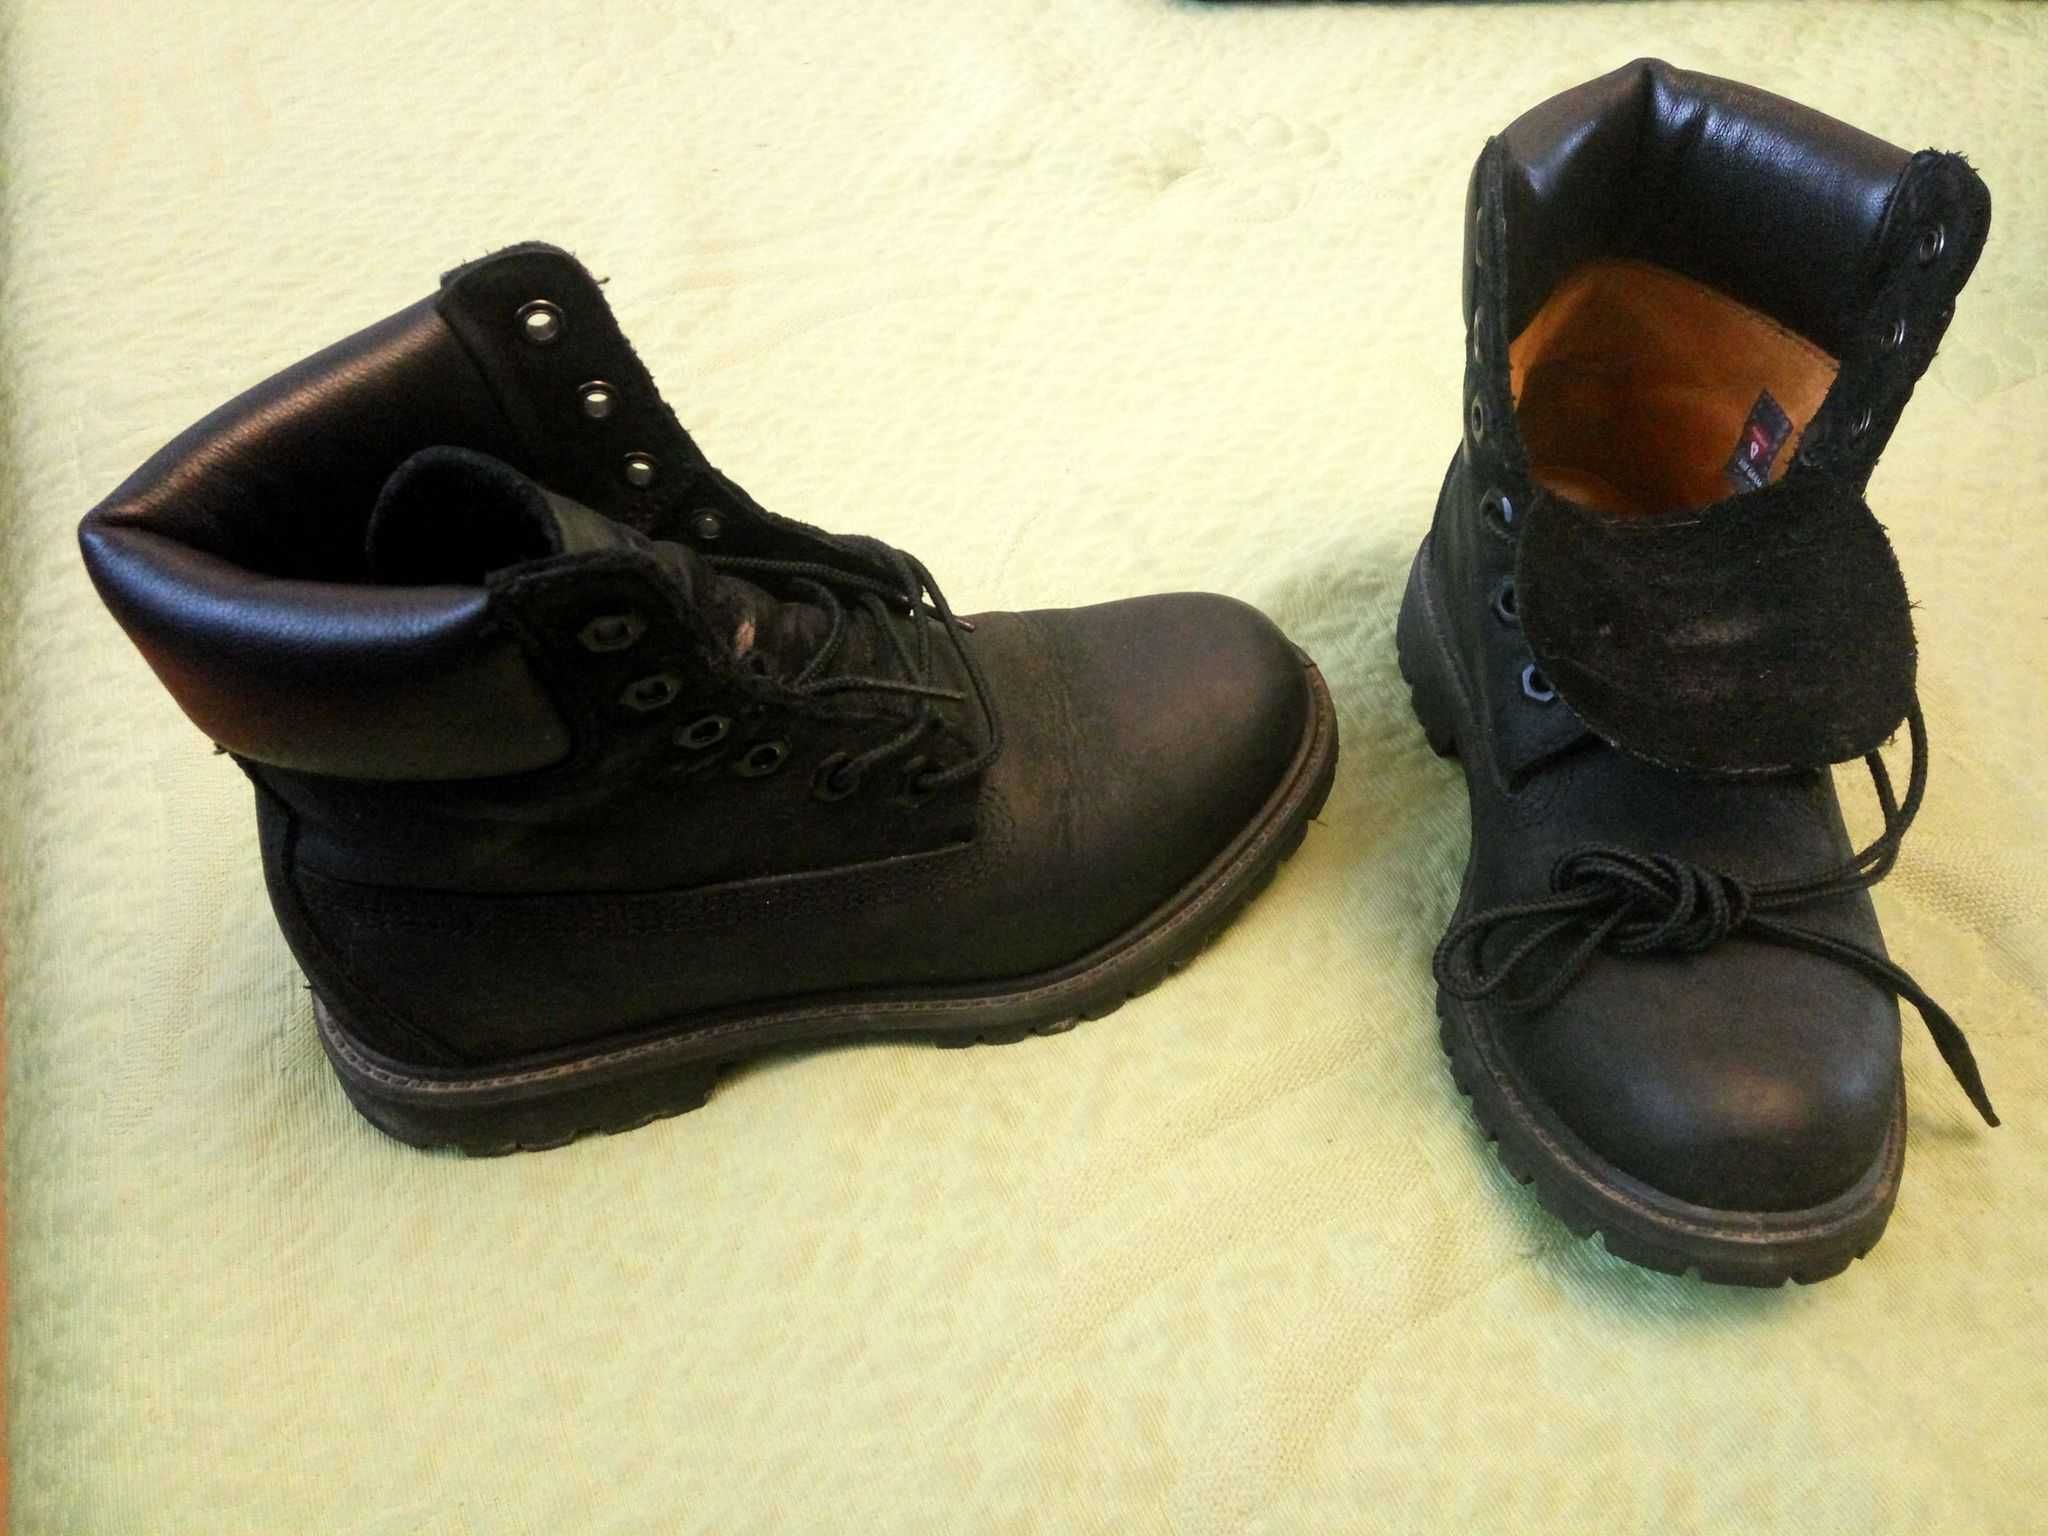 Buty zimowe na chłopca 36 - 5,5 skóra naturalna jak nowe całe skórzane